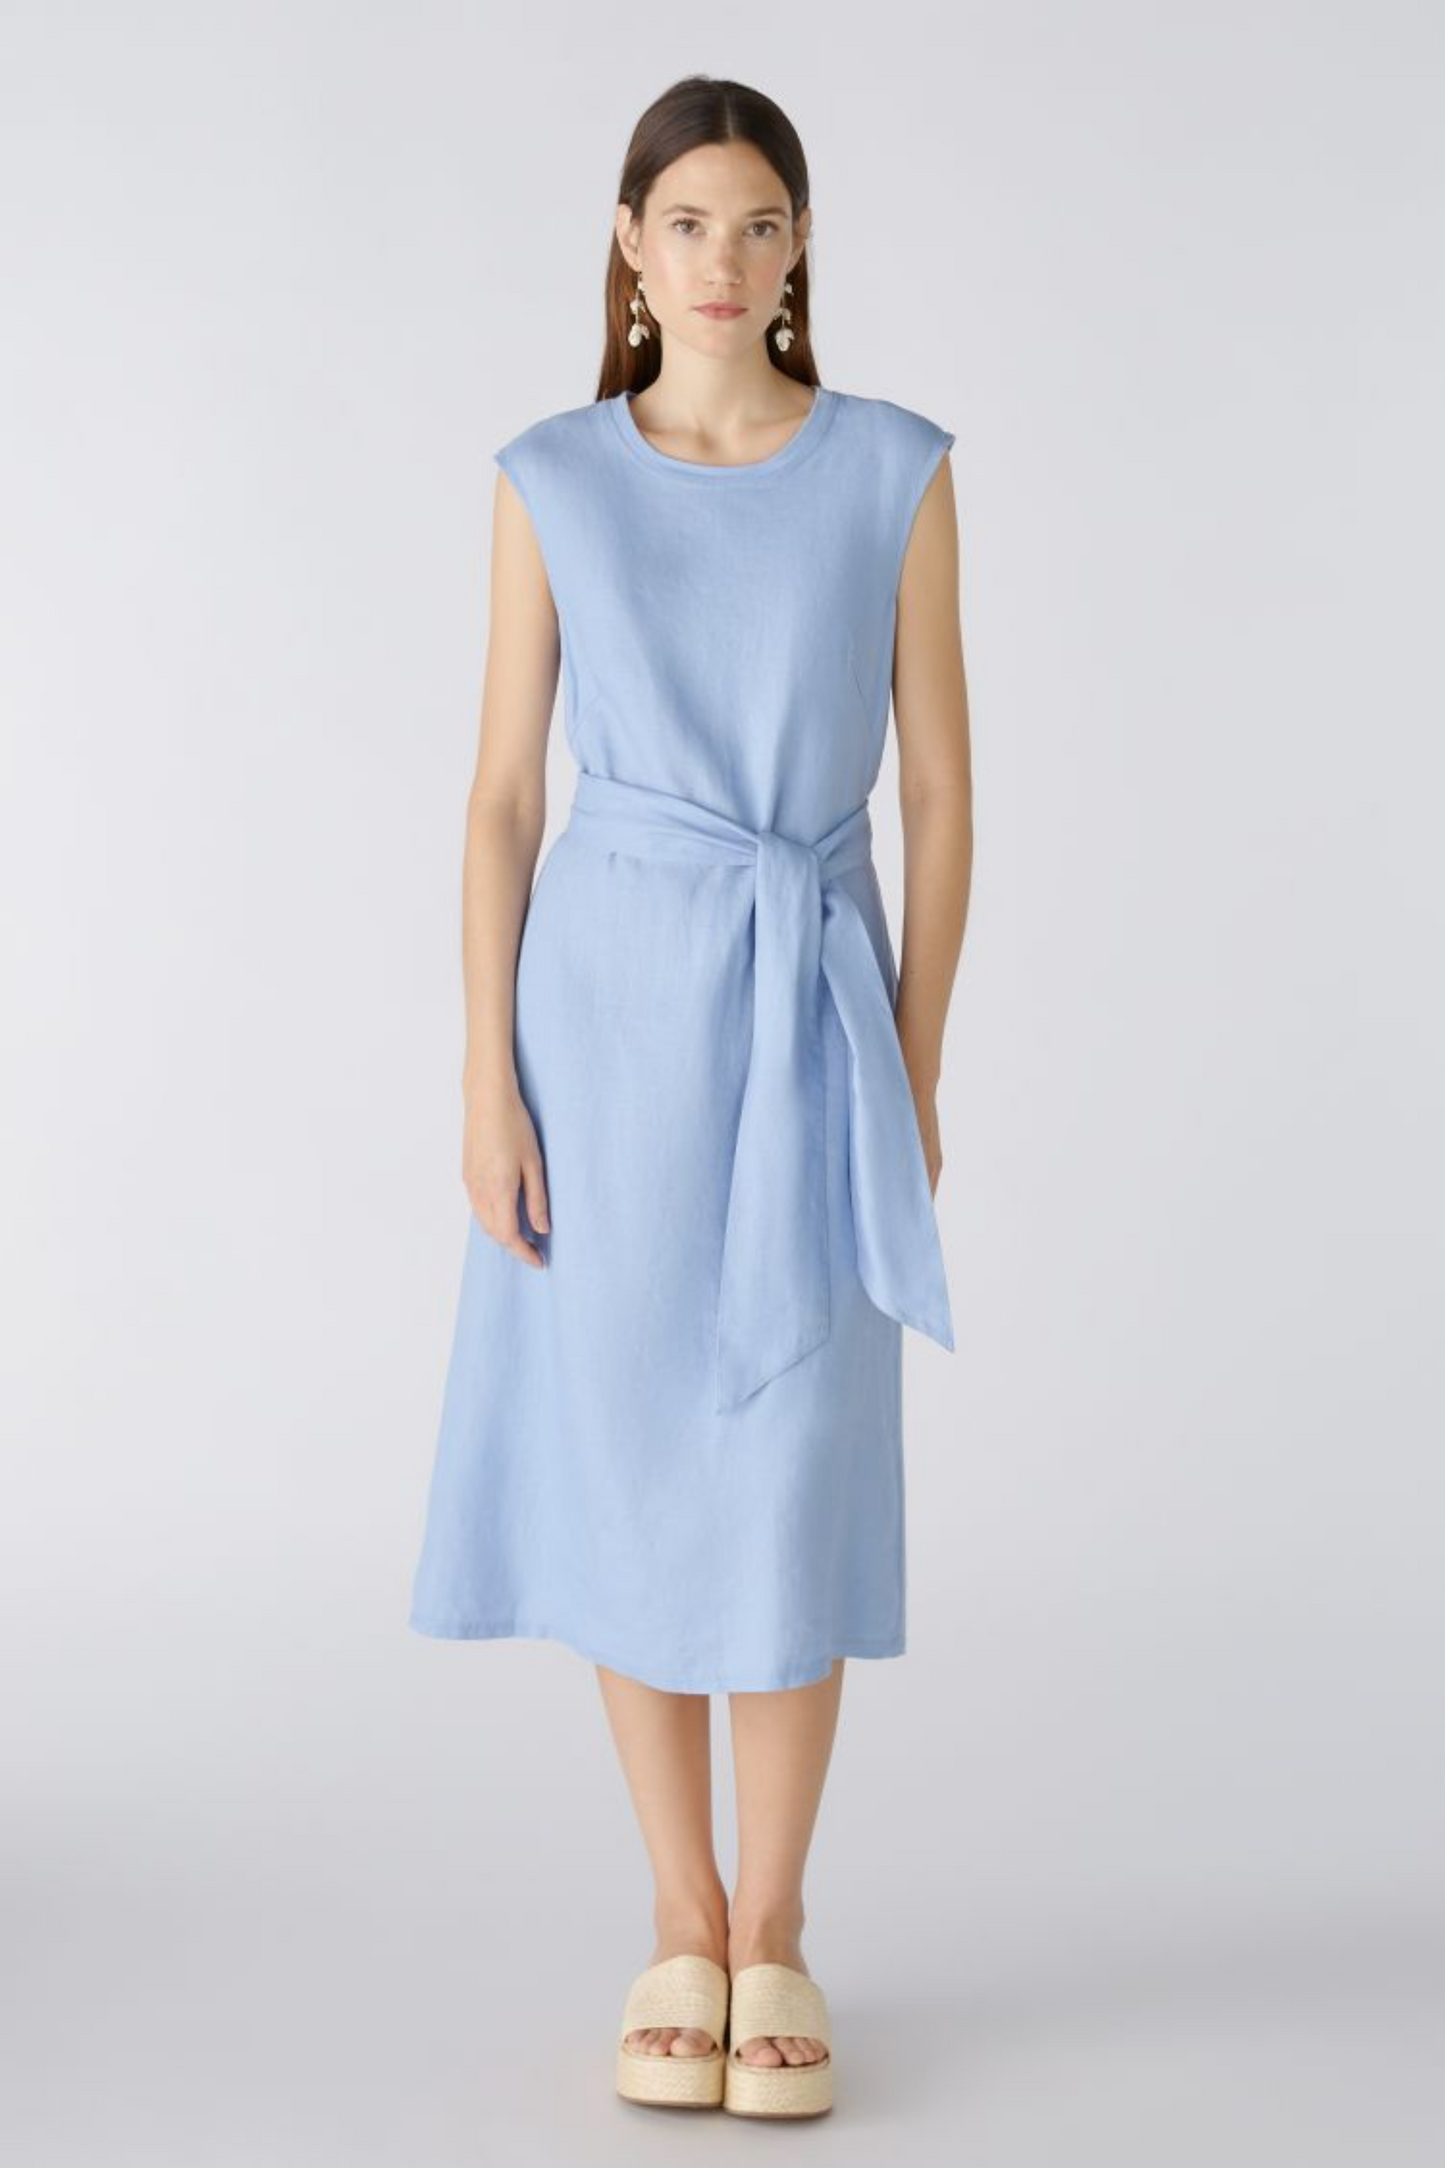 Oui - Light Blue Linen Dress